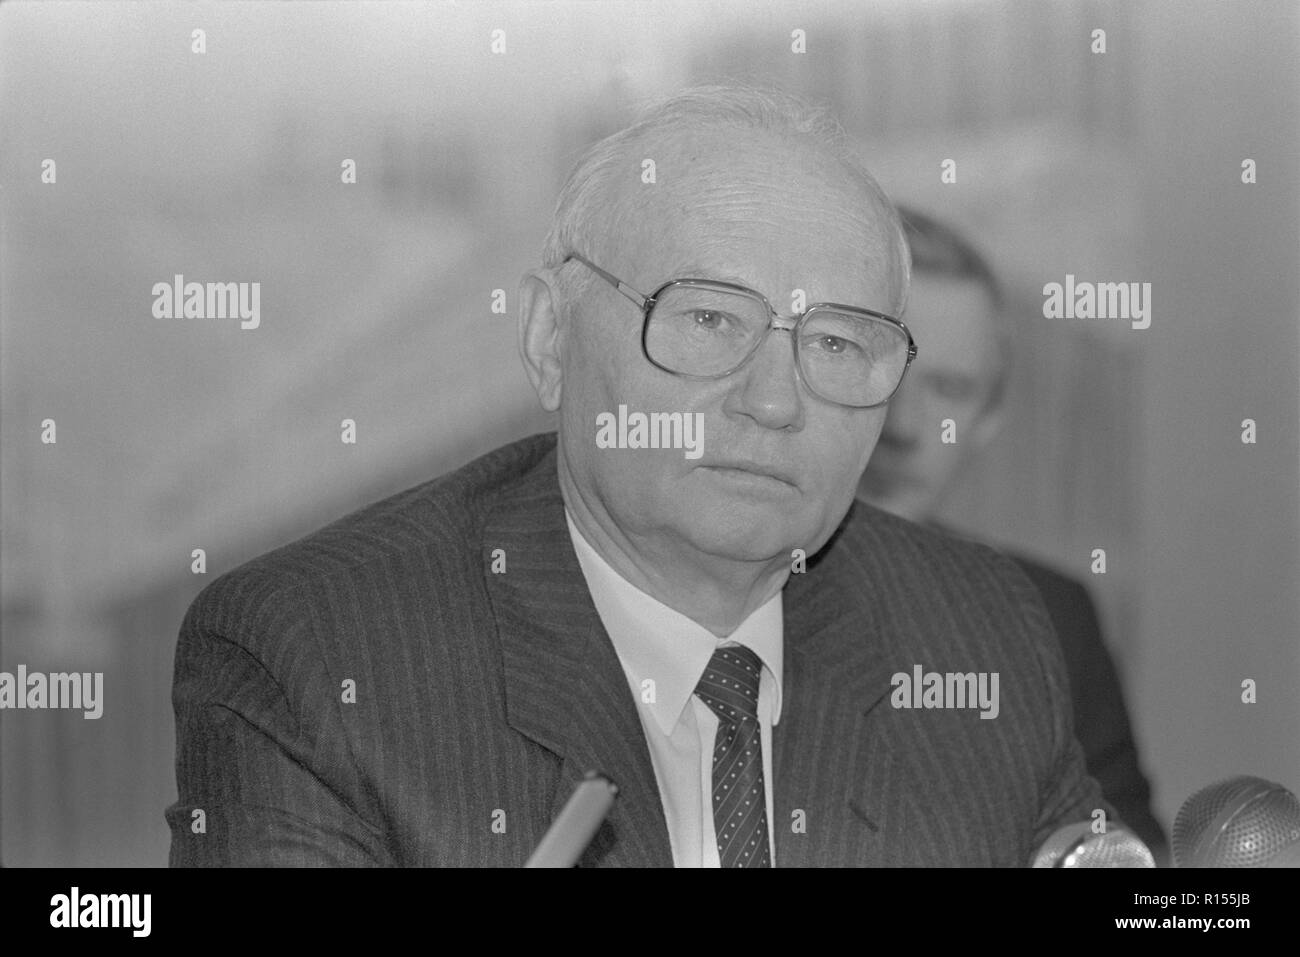 Moscou, URSS - 26 décembre 1990 : Président du Comité de sécurité de l'Etat (KGB) Vladimir Alexandrovich Kryuchkov donne une conférence de presse au 4e Congrès des députés du peuple de l'URSS Banque D'Images